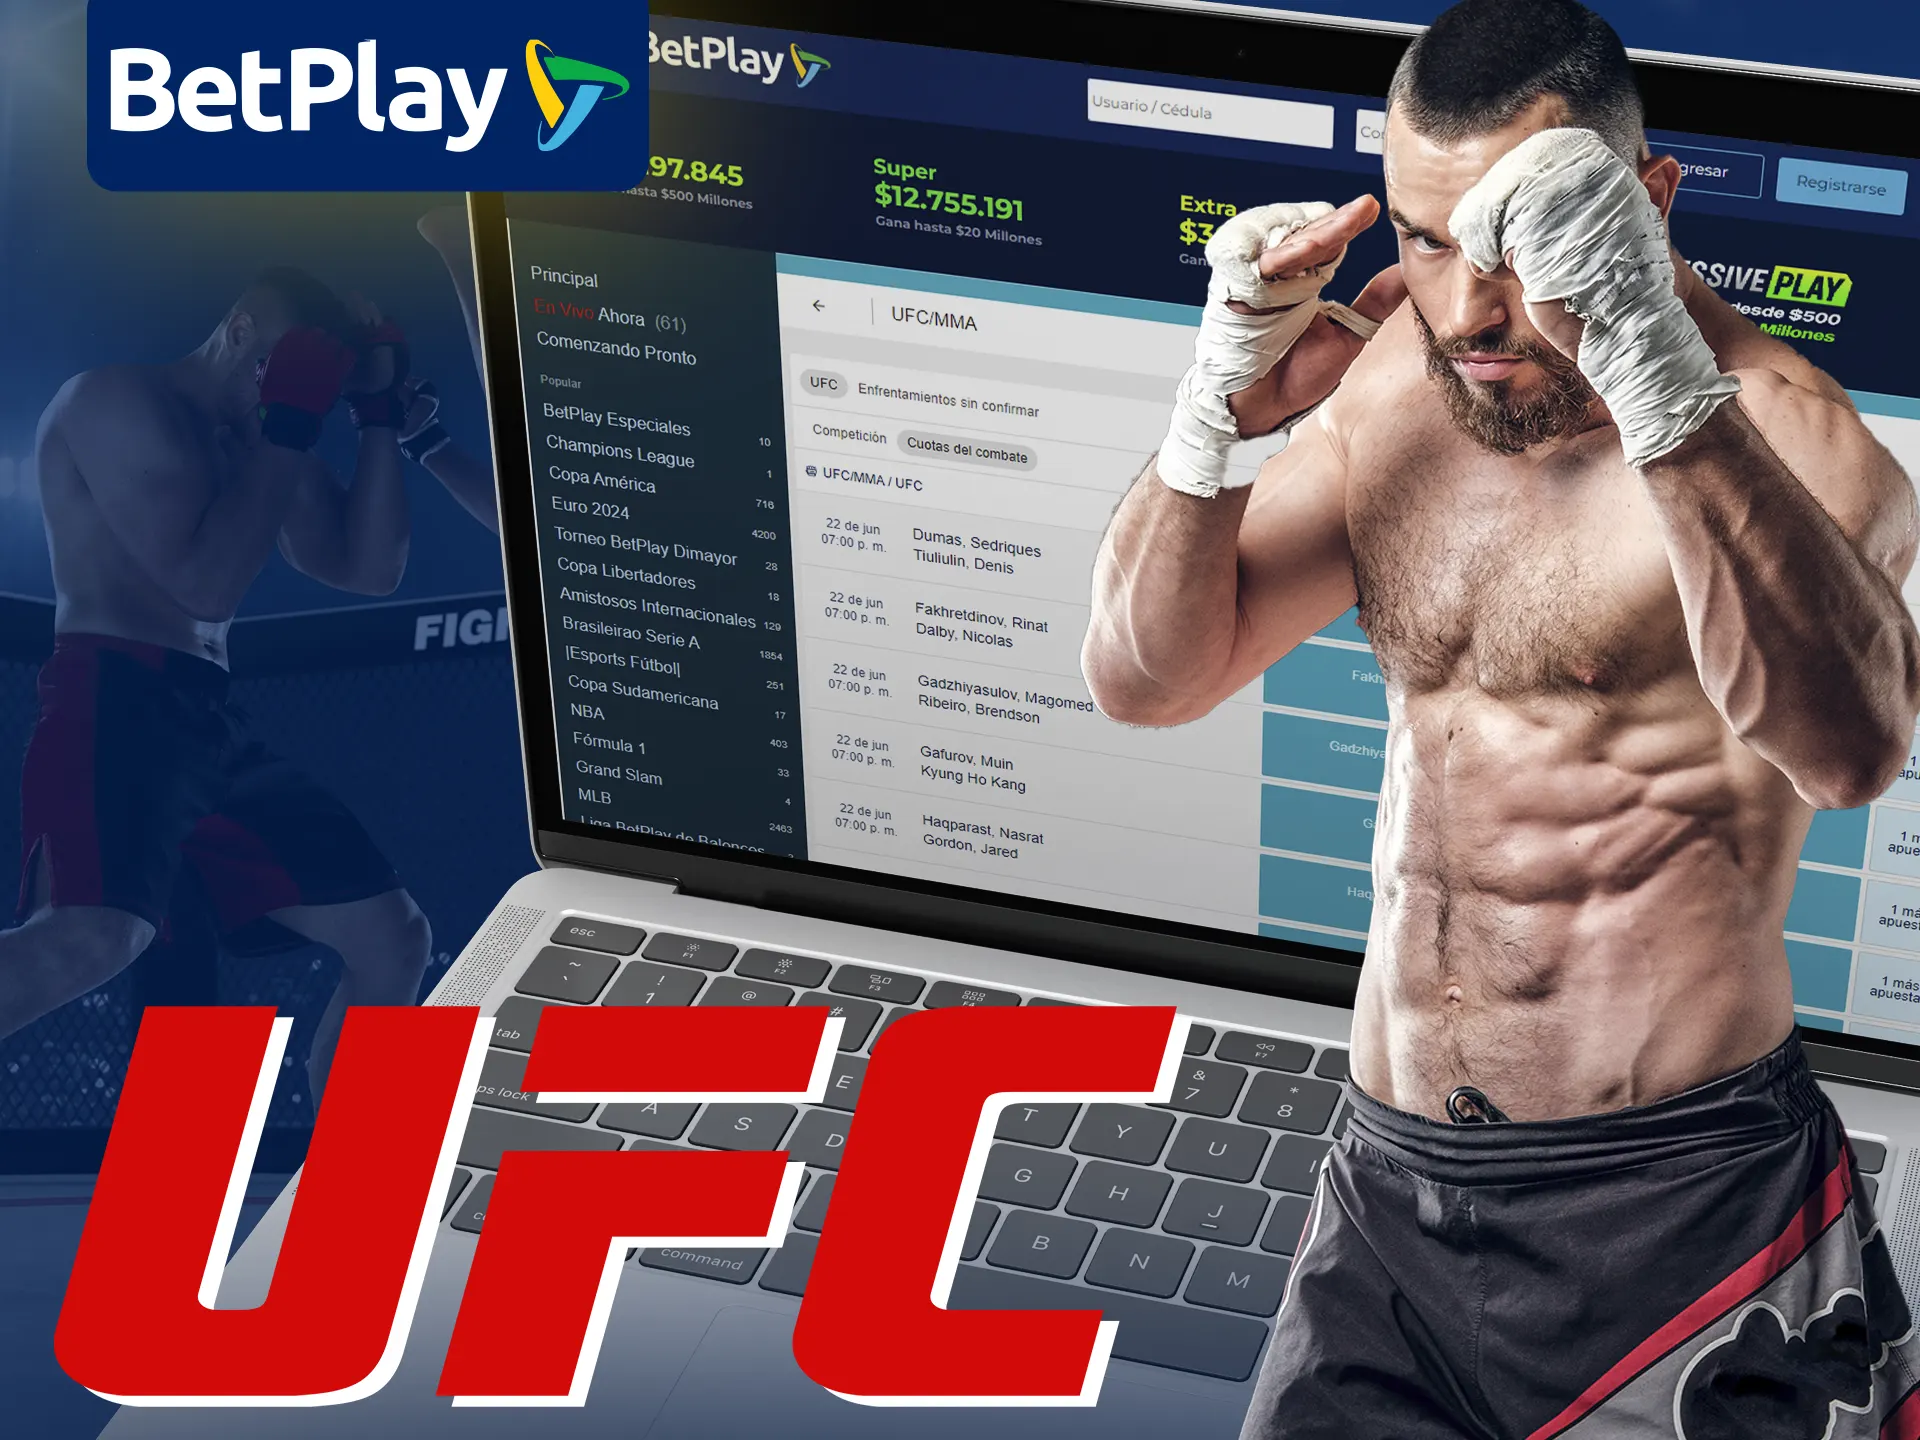 BetPlay ofrece apuestas en UFC para varias peleas.